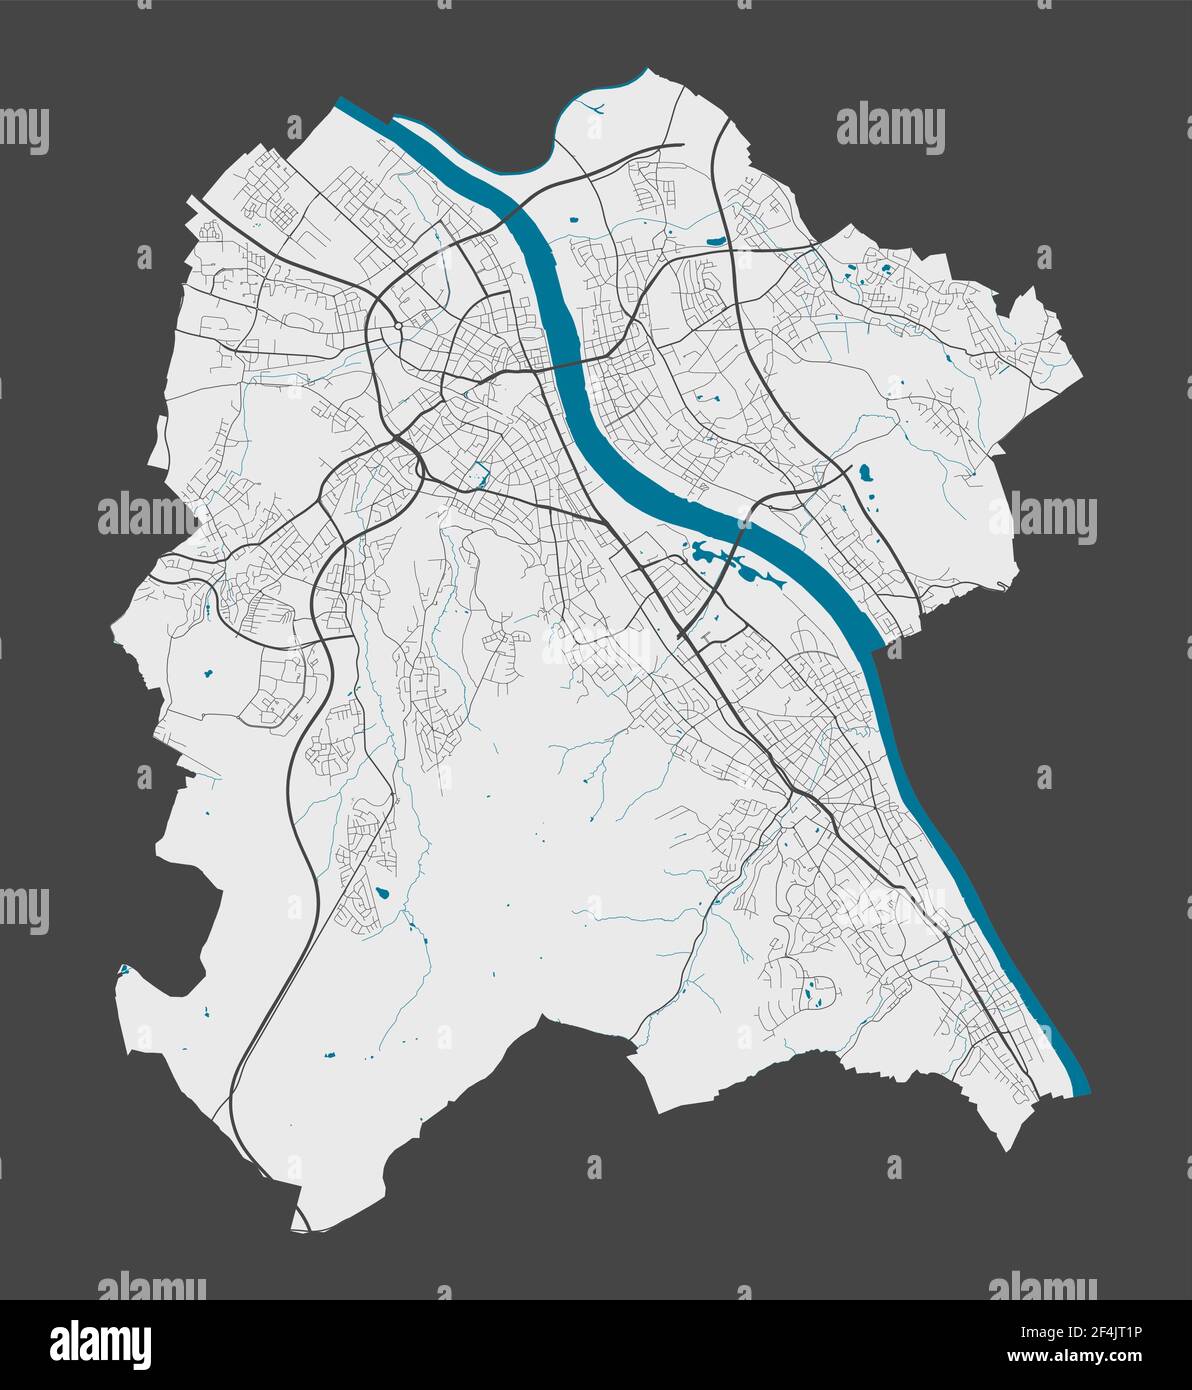 Mappa di Bonn. Mappa dettagliata dell'area amministrativa della città di Bonn. Panorama cittadino. Illustrazione vettoriale priva di royalty. Mappa con autostrade, strade, riv Illustrazione Vettoriale